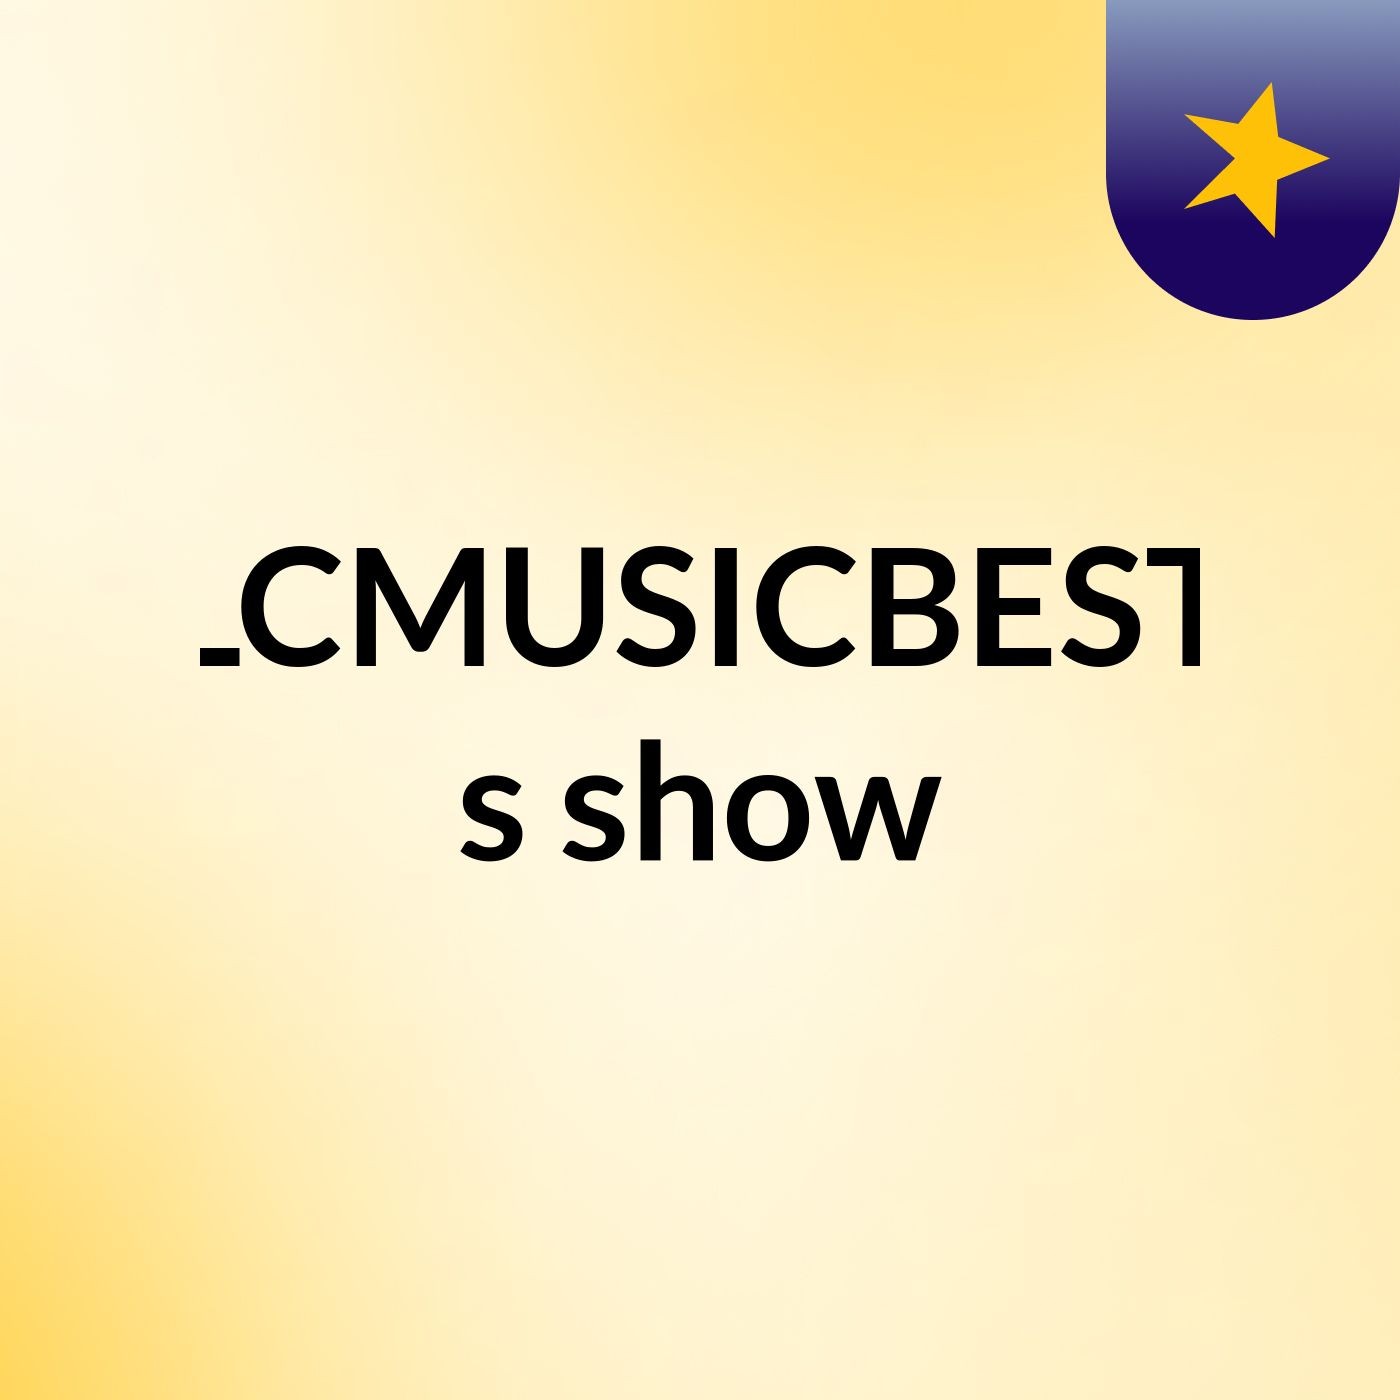 LCMUSICBEST's show